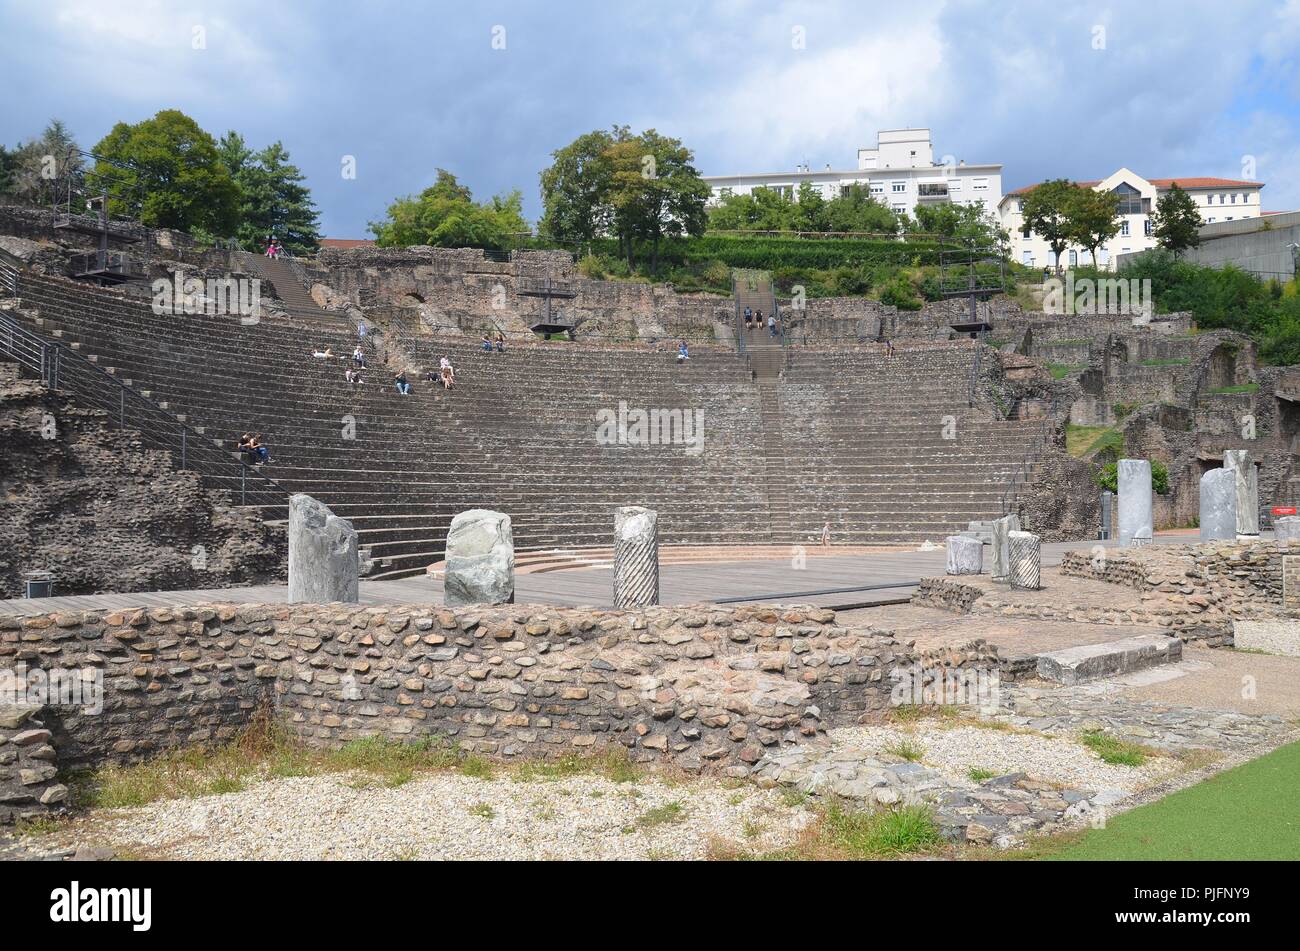 Lione, die Stadt am Zusammenfluss von Rhone und Saone, Frankreich: das römische Teatro von Lugdunum Foto Stock